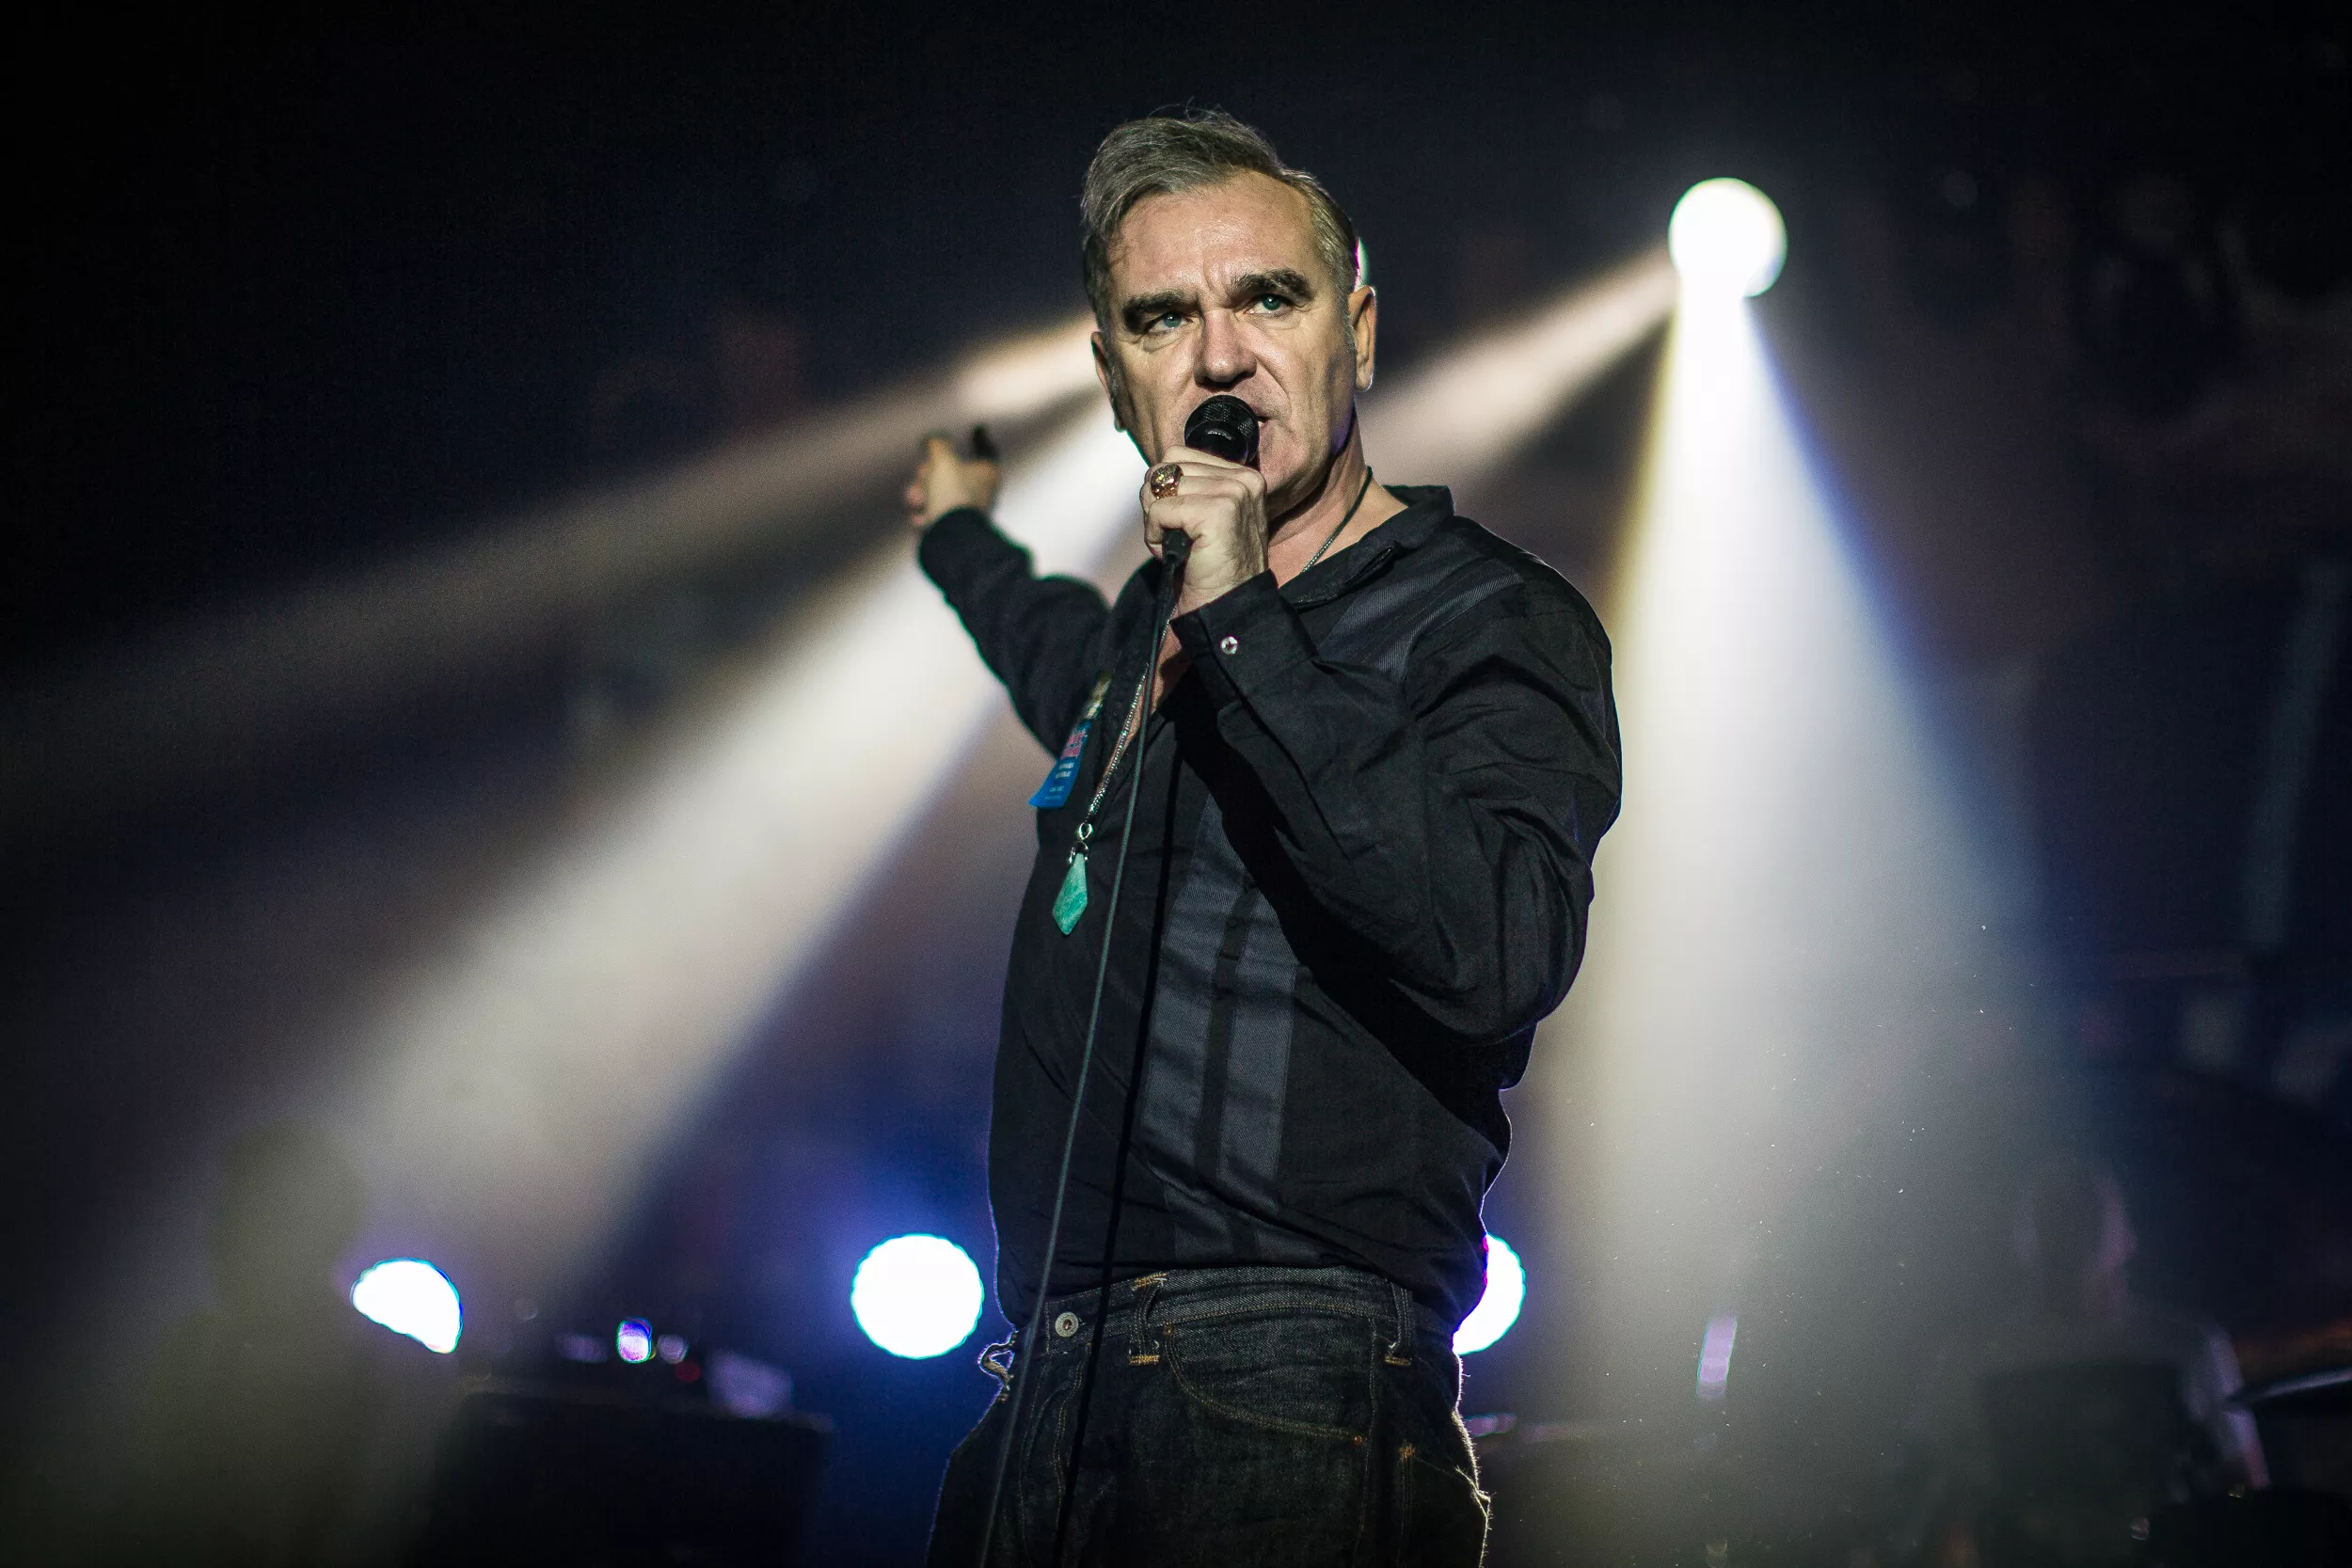 Morrissey premiärspelar ny singel och framför gamla hits